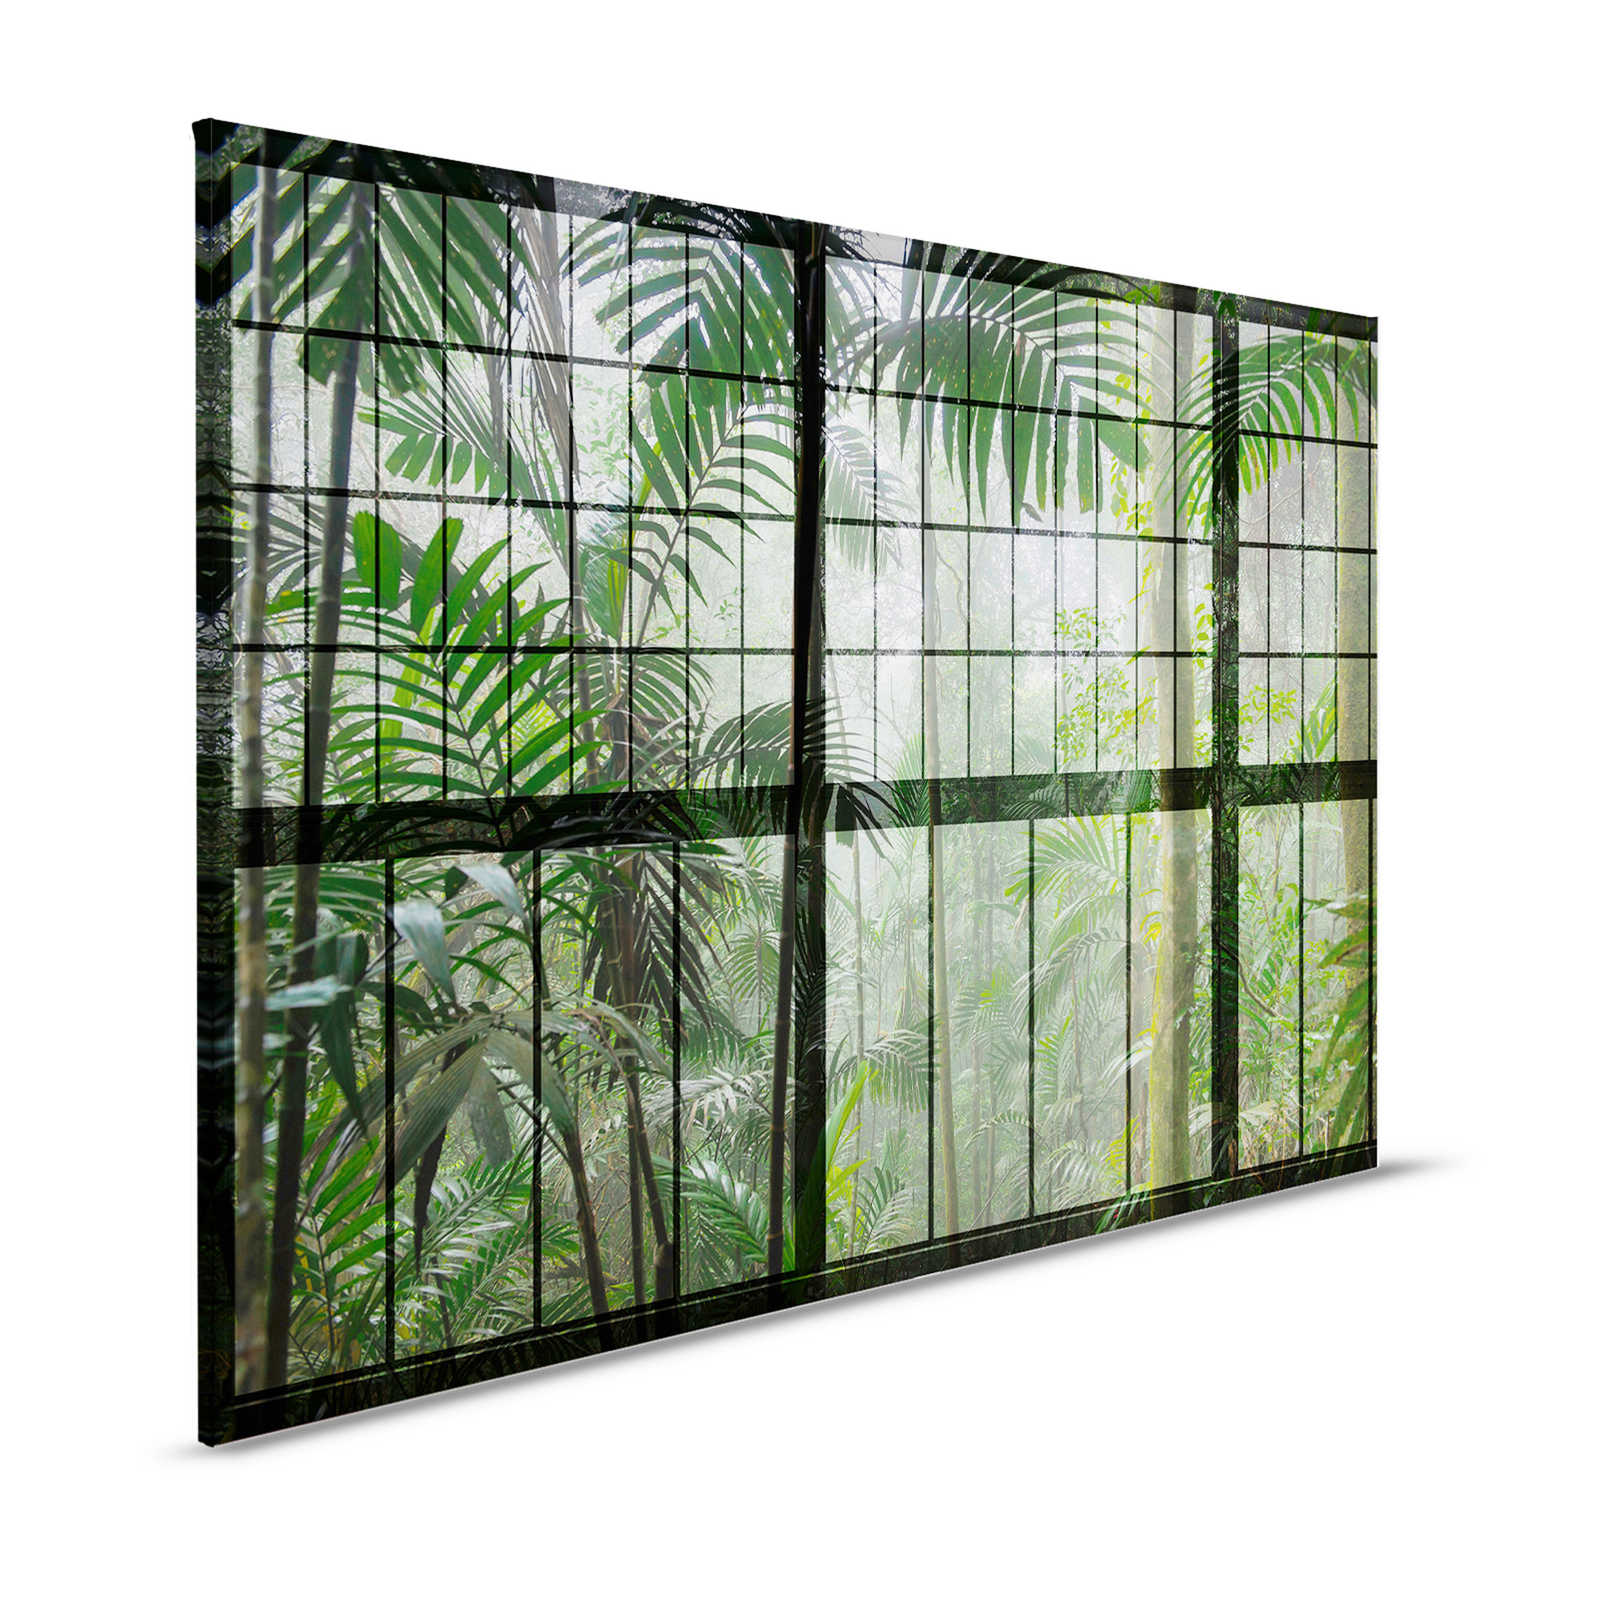 Rainforest 1 - Loft Raam Canvas Schilderij met Uitzicht op de Jungle - 1.20 m x 0.80 m
